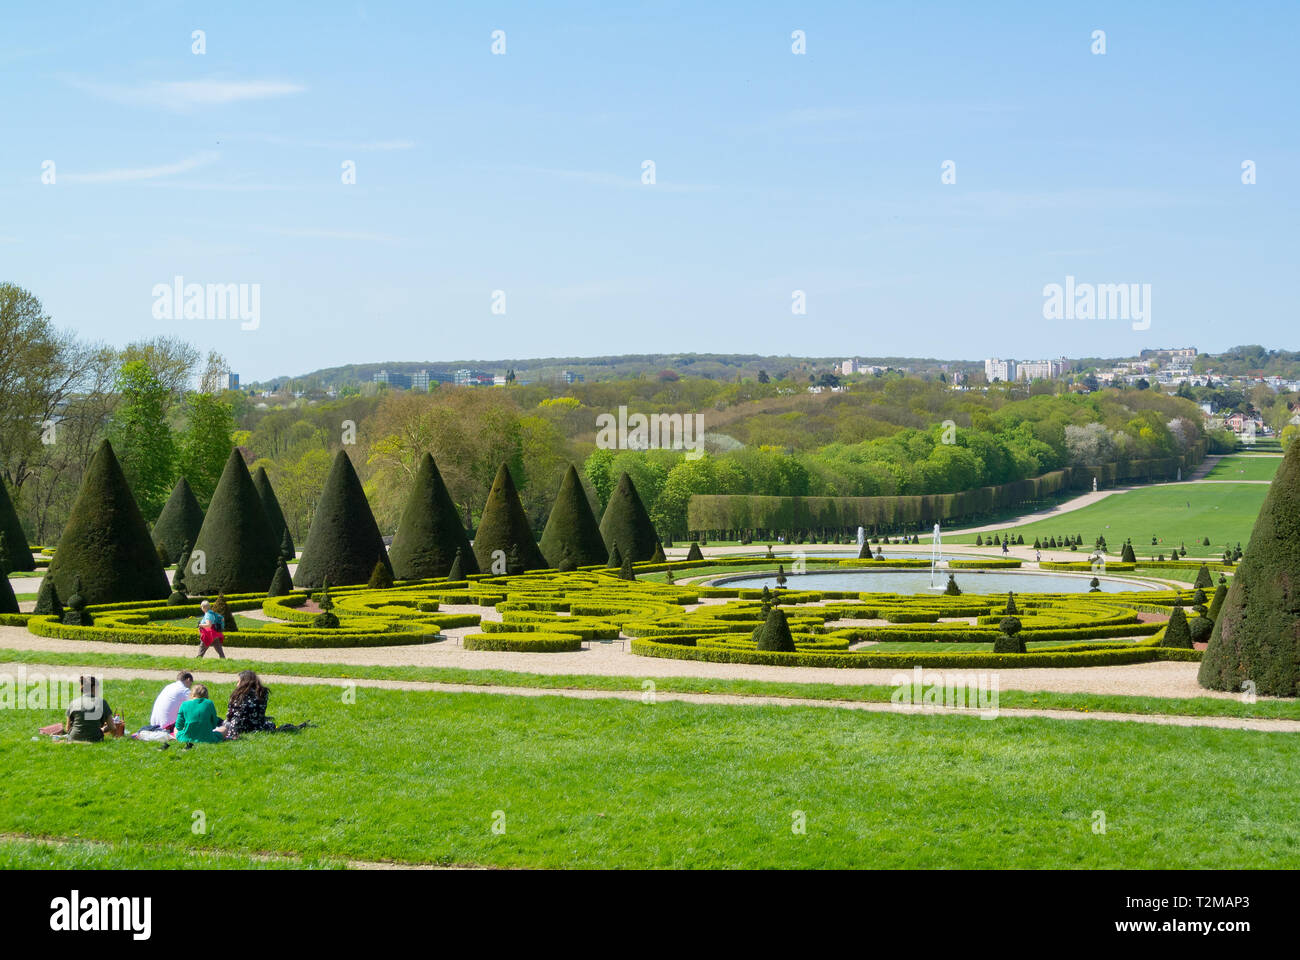 people at a picnic, parc de sceaux, haut de seine, france Stock Photo